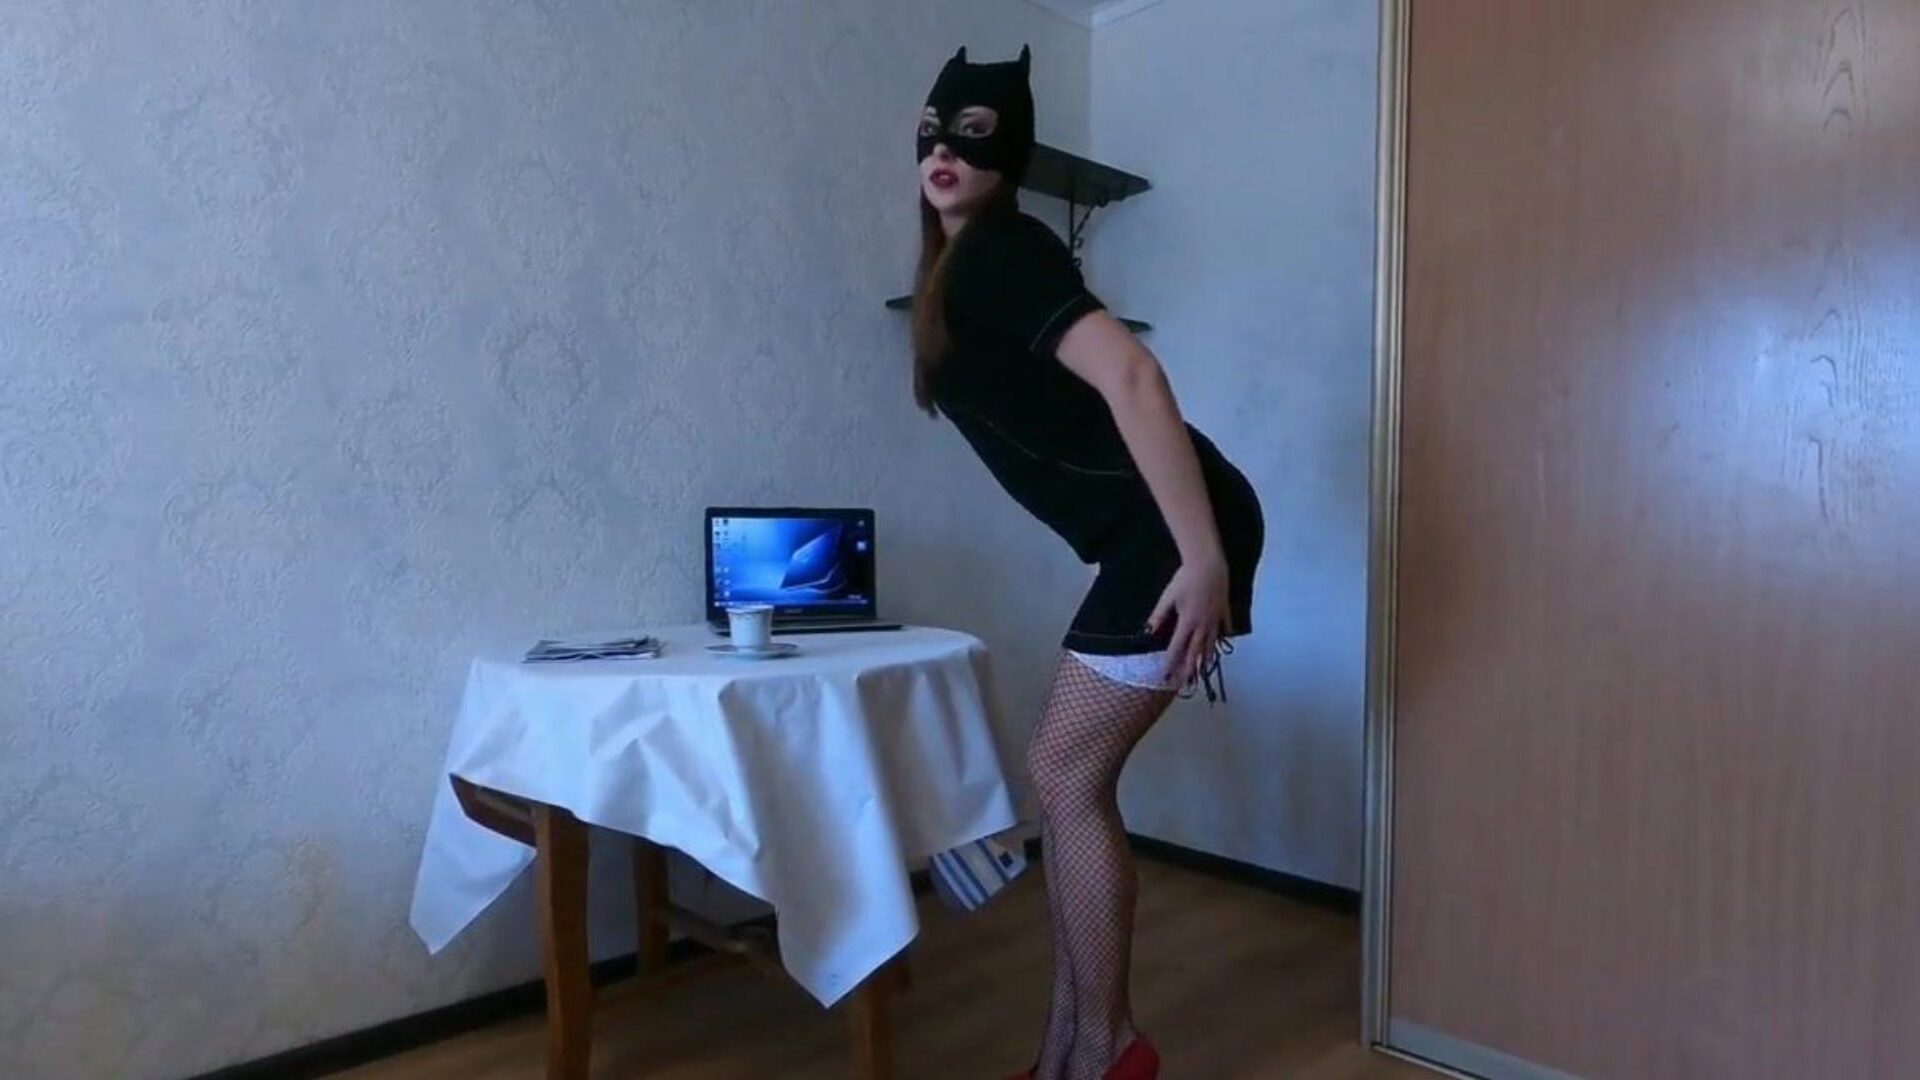 secretar sexy dansează și benzi pentru tine, porno 41: xhamster urmărește secretar sexy dansuri și benzi pentru tine episodul pe xhamster, cel mai gros site web hd tube fuckfest cu o mulțime de videoclipuri porno italiene sexy gratuite și xxnx